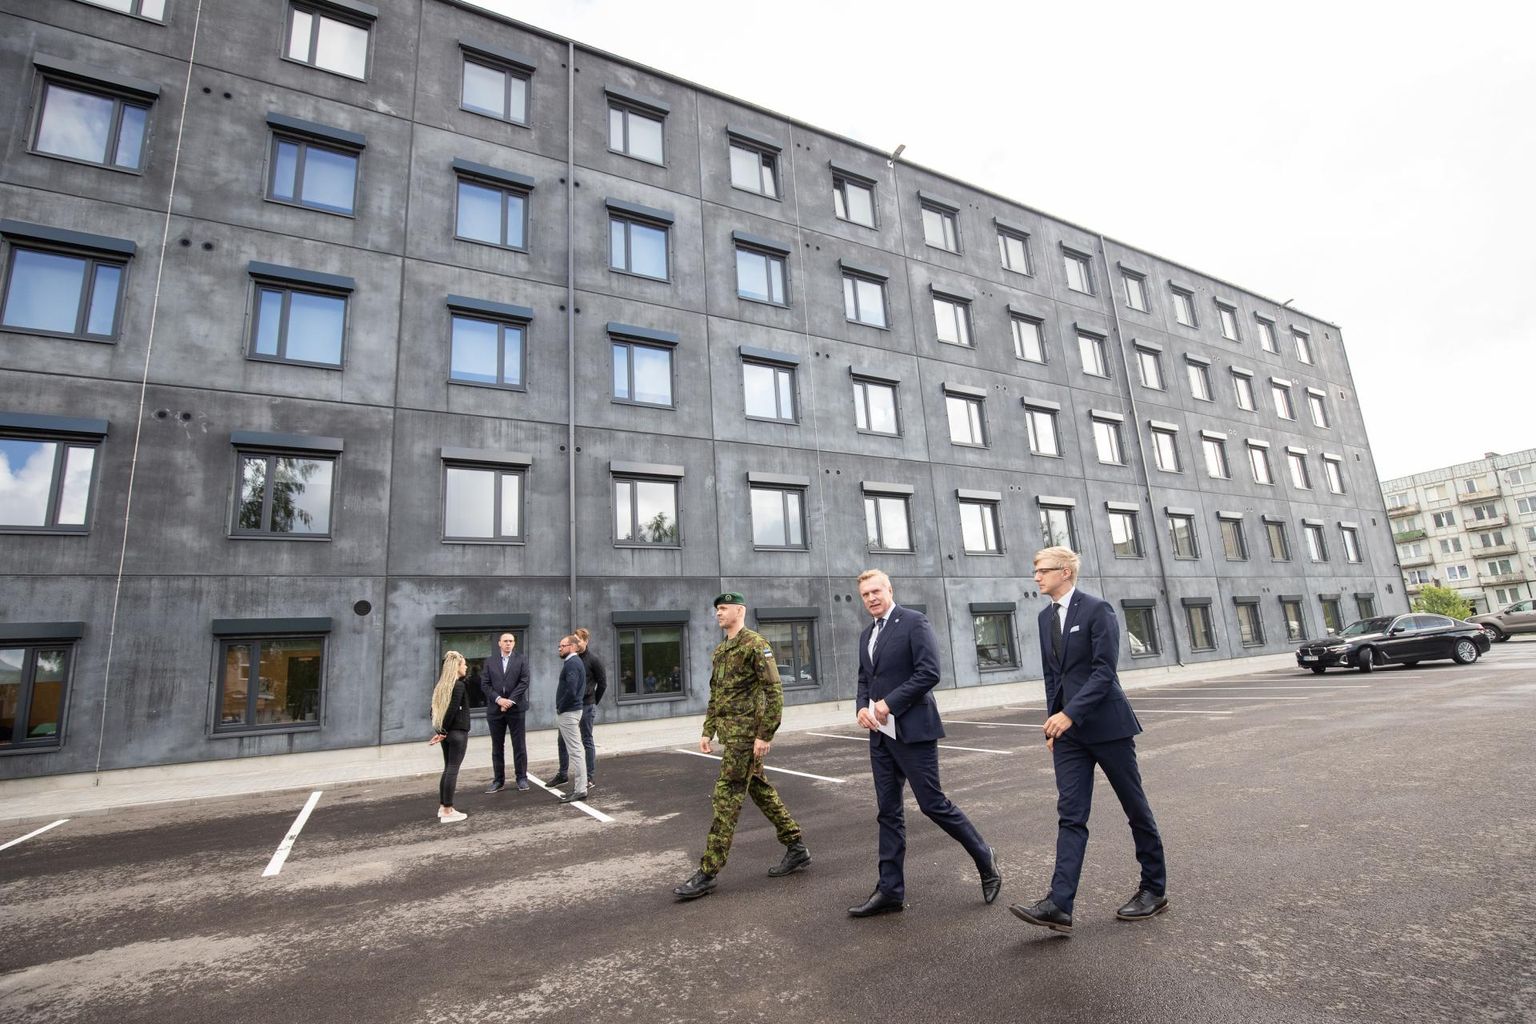 Hoone avamisel käisid kolonel Vahur Karus (vasakult), minister Kalle Laanet ja nõunik Kristo Enn Vaga